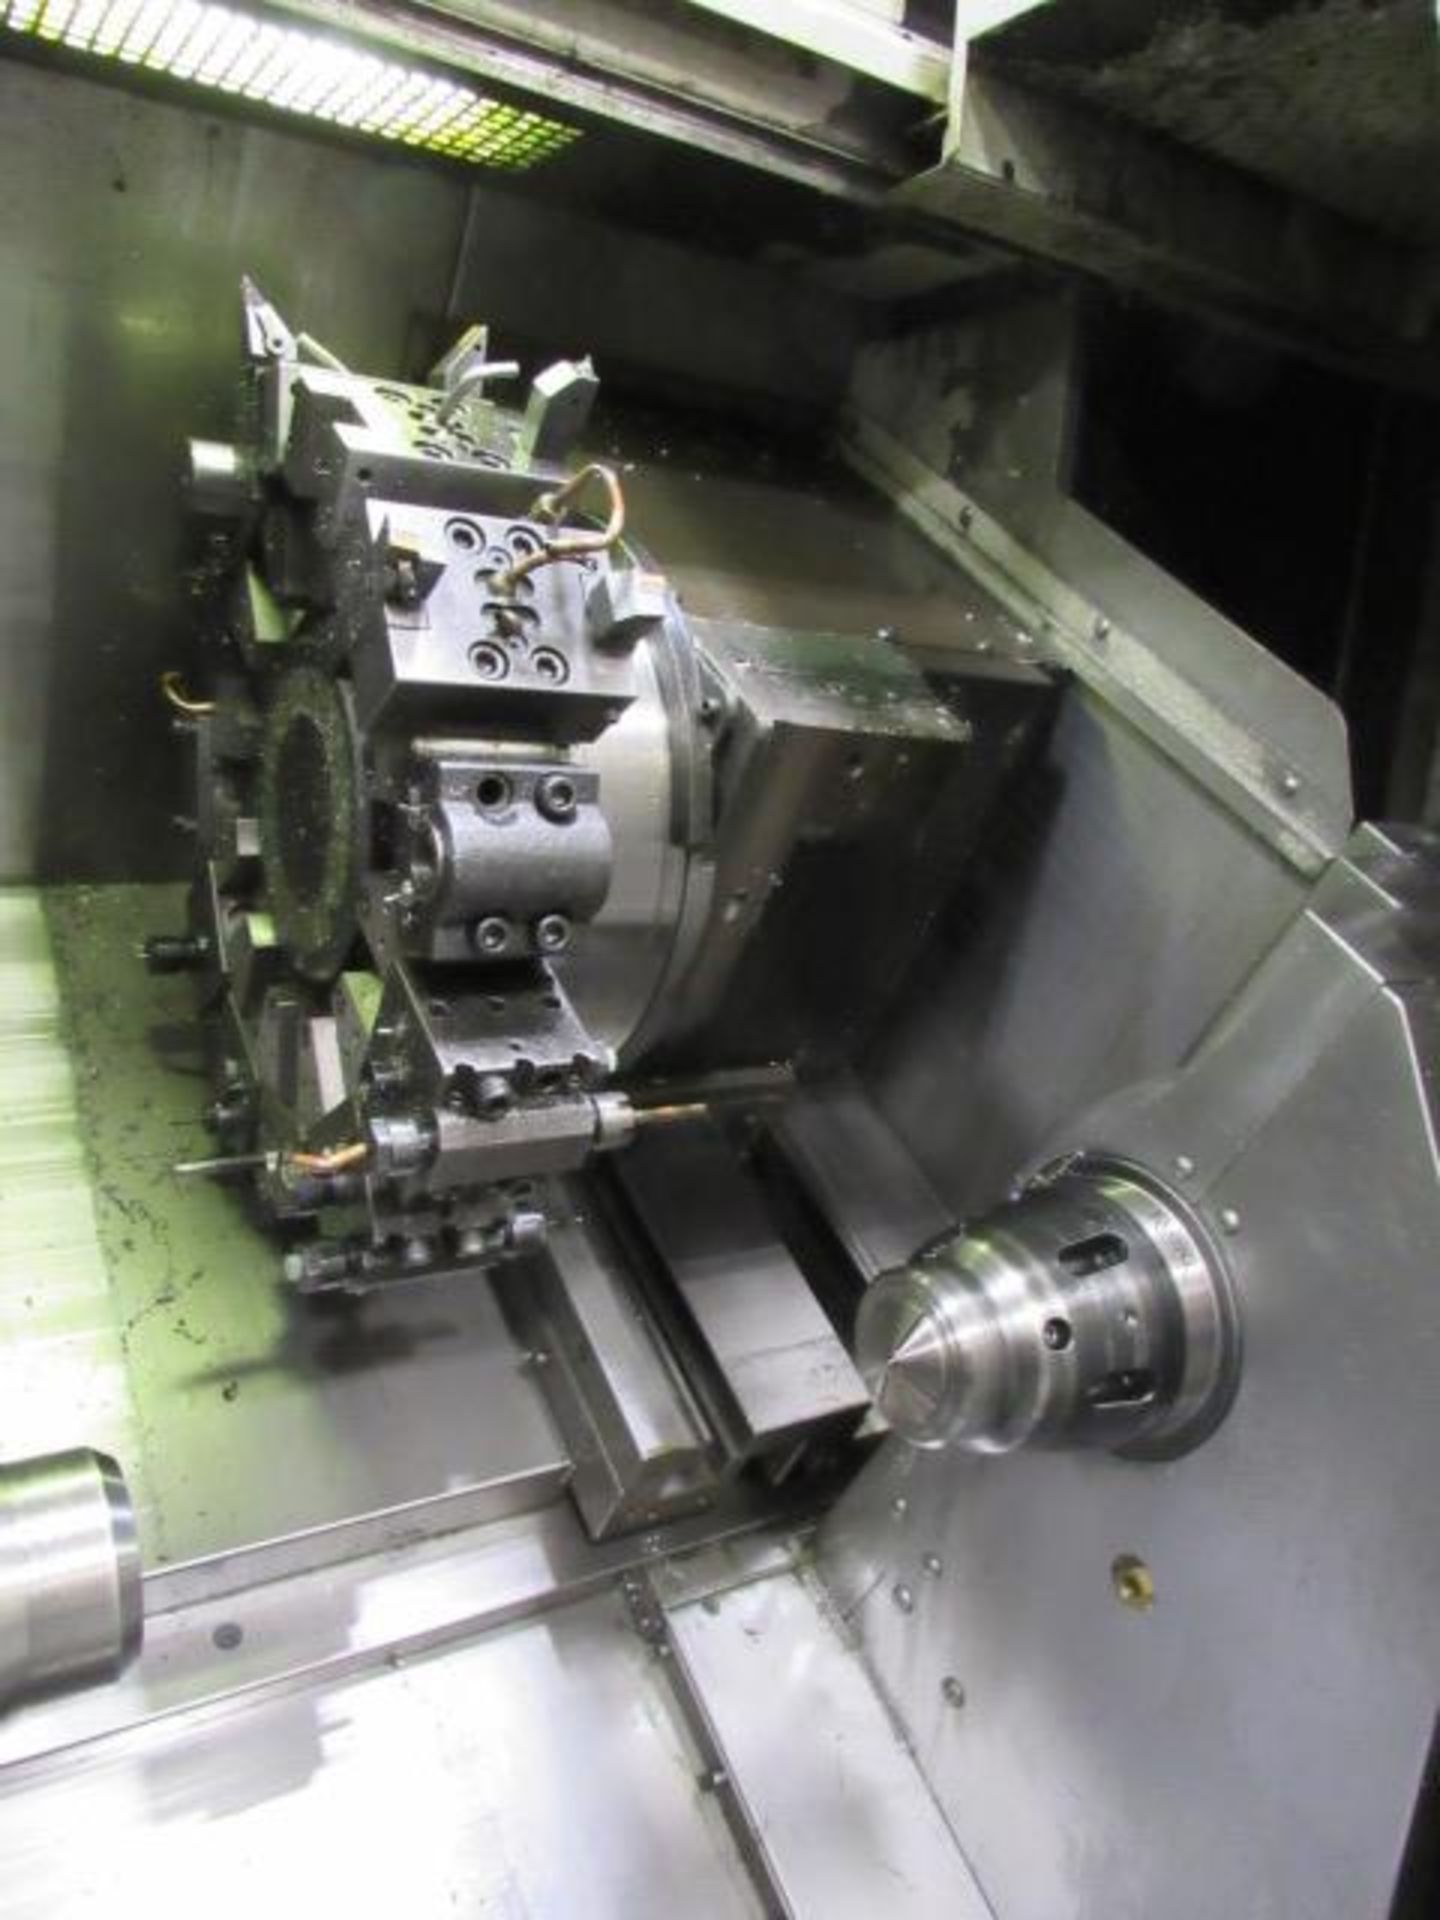 Mori Seiki SL-150S Dual Spindle CNC Turning Center - Image 8 of 9